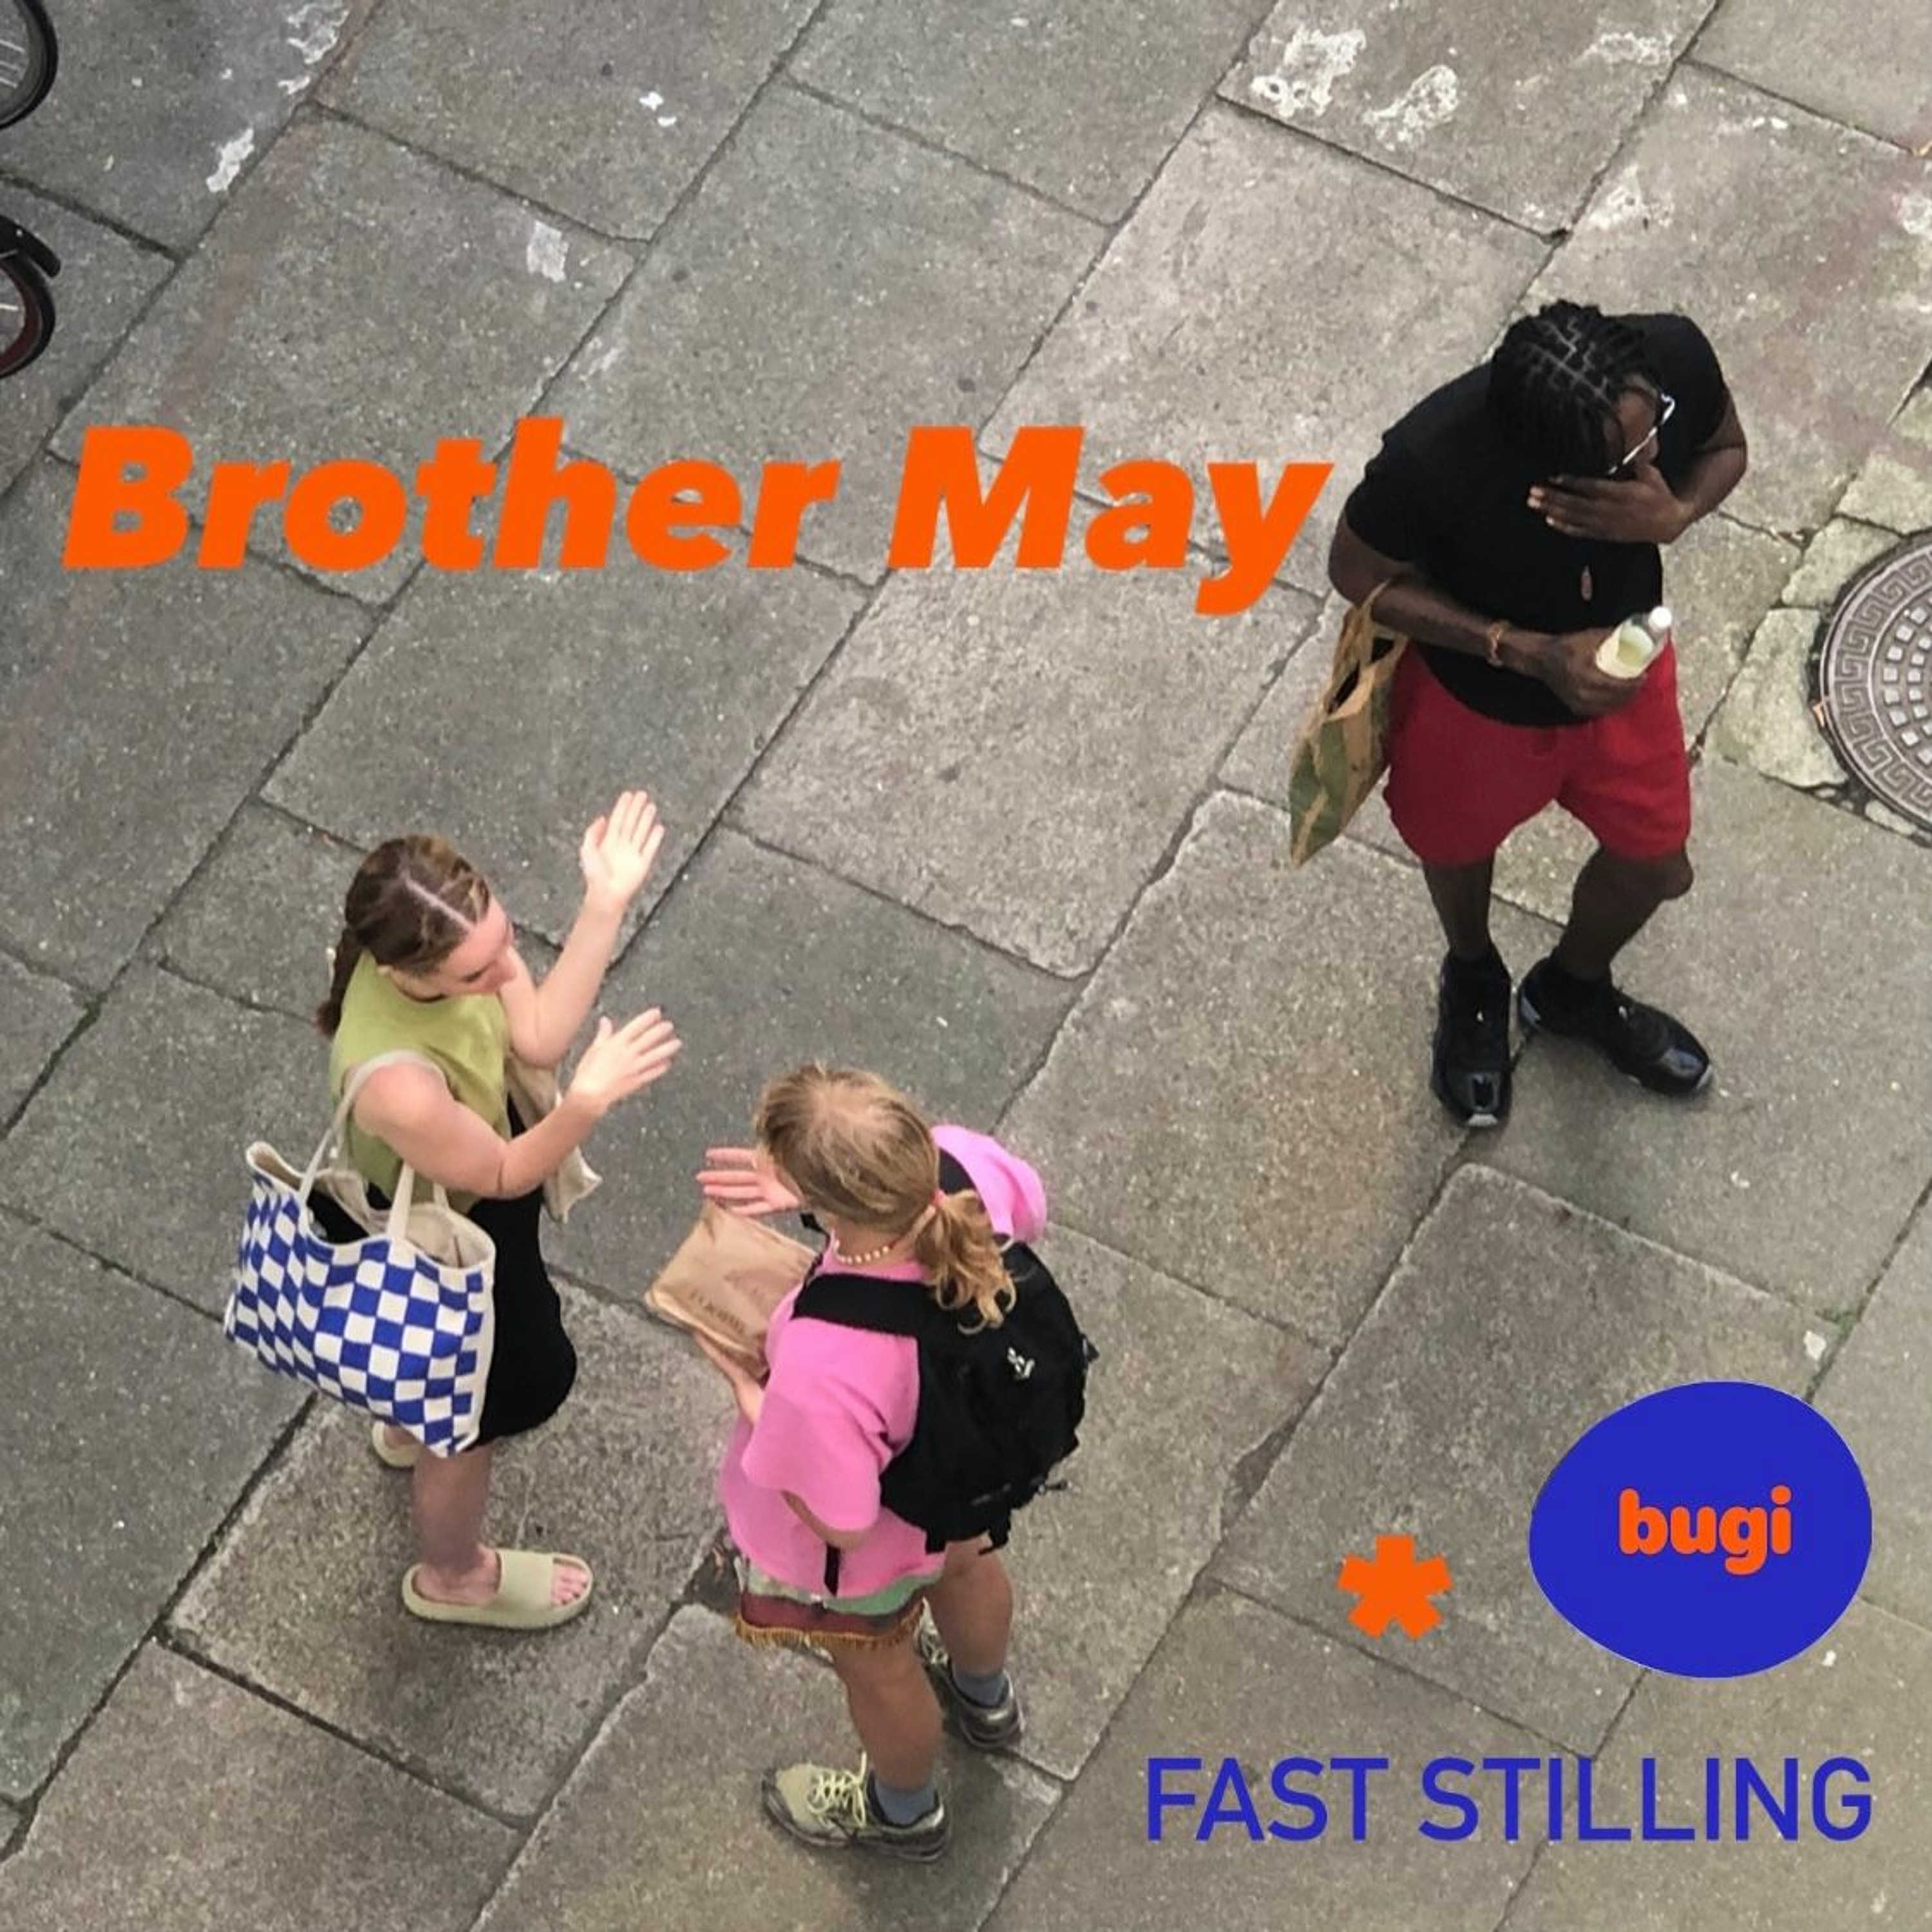 Fast Stilling x bugi x Brother May